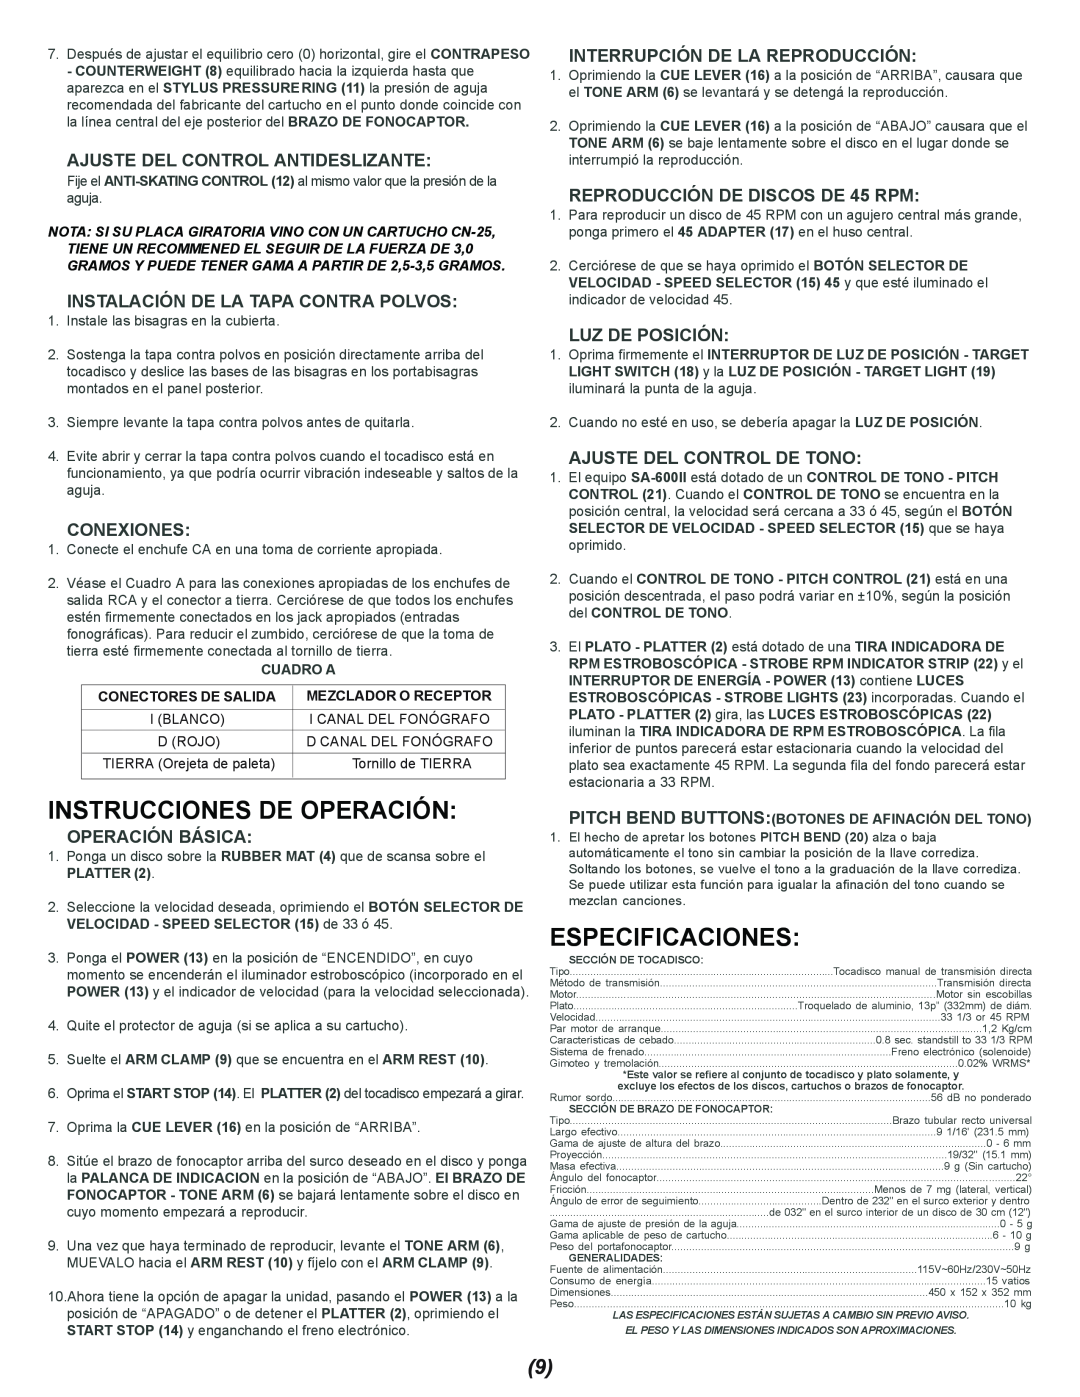 Gemini SA-600II manual Instrucciones De Operación, Especificaciones, Ajuste Del Control Antideslizante, Conexiones 